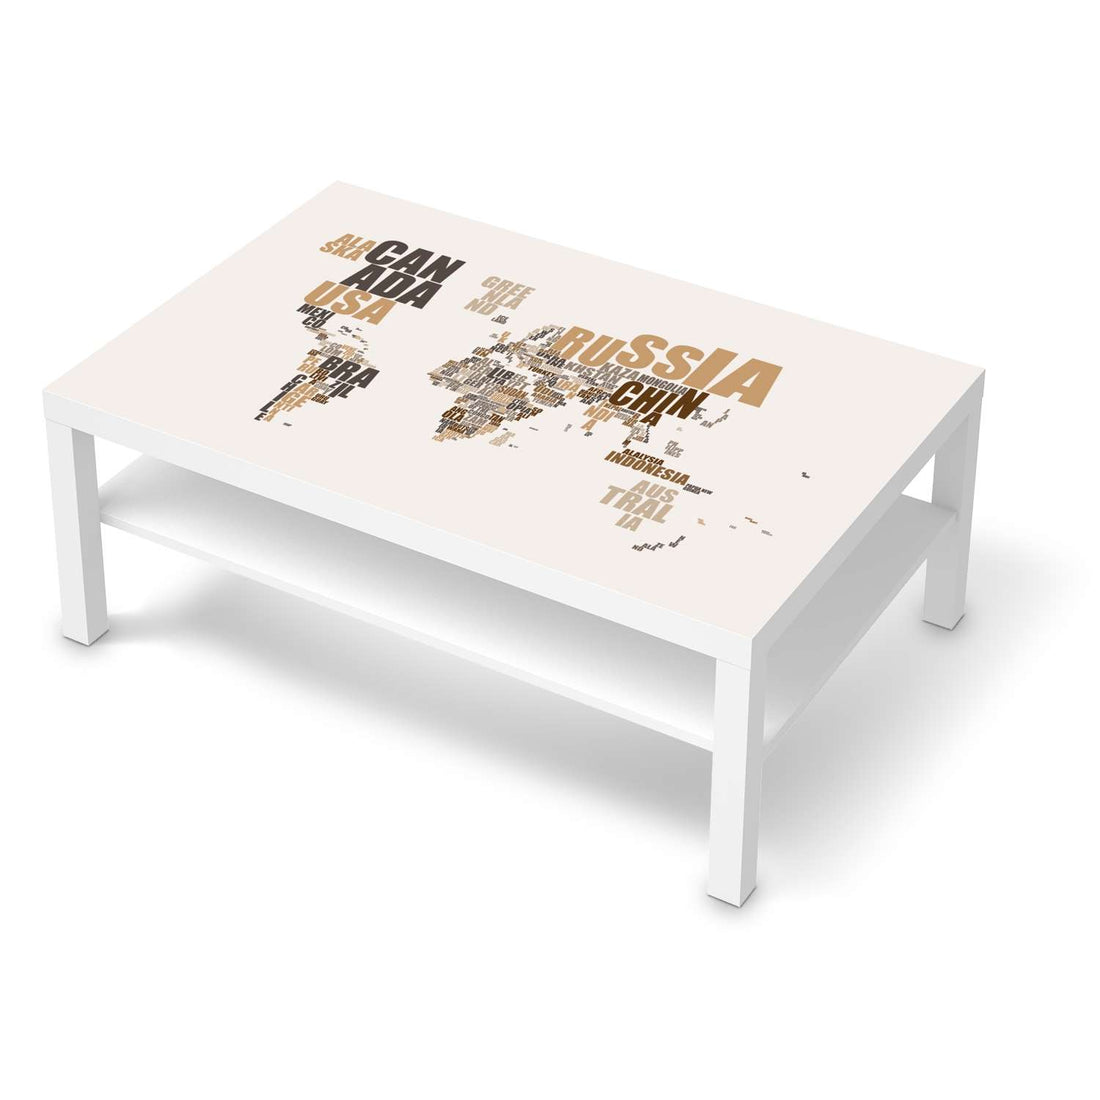 Klebefolie World Map - Braun - IKEA Lack Tisch 118x78 cm - weiss